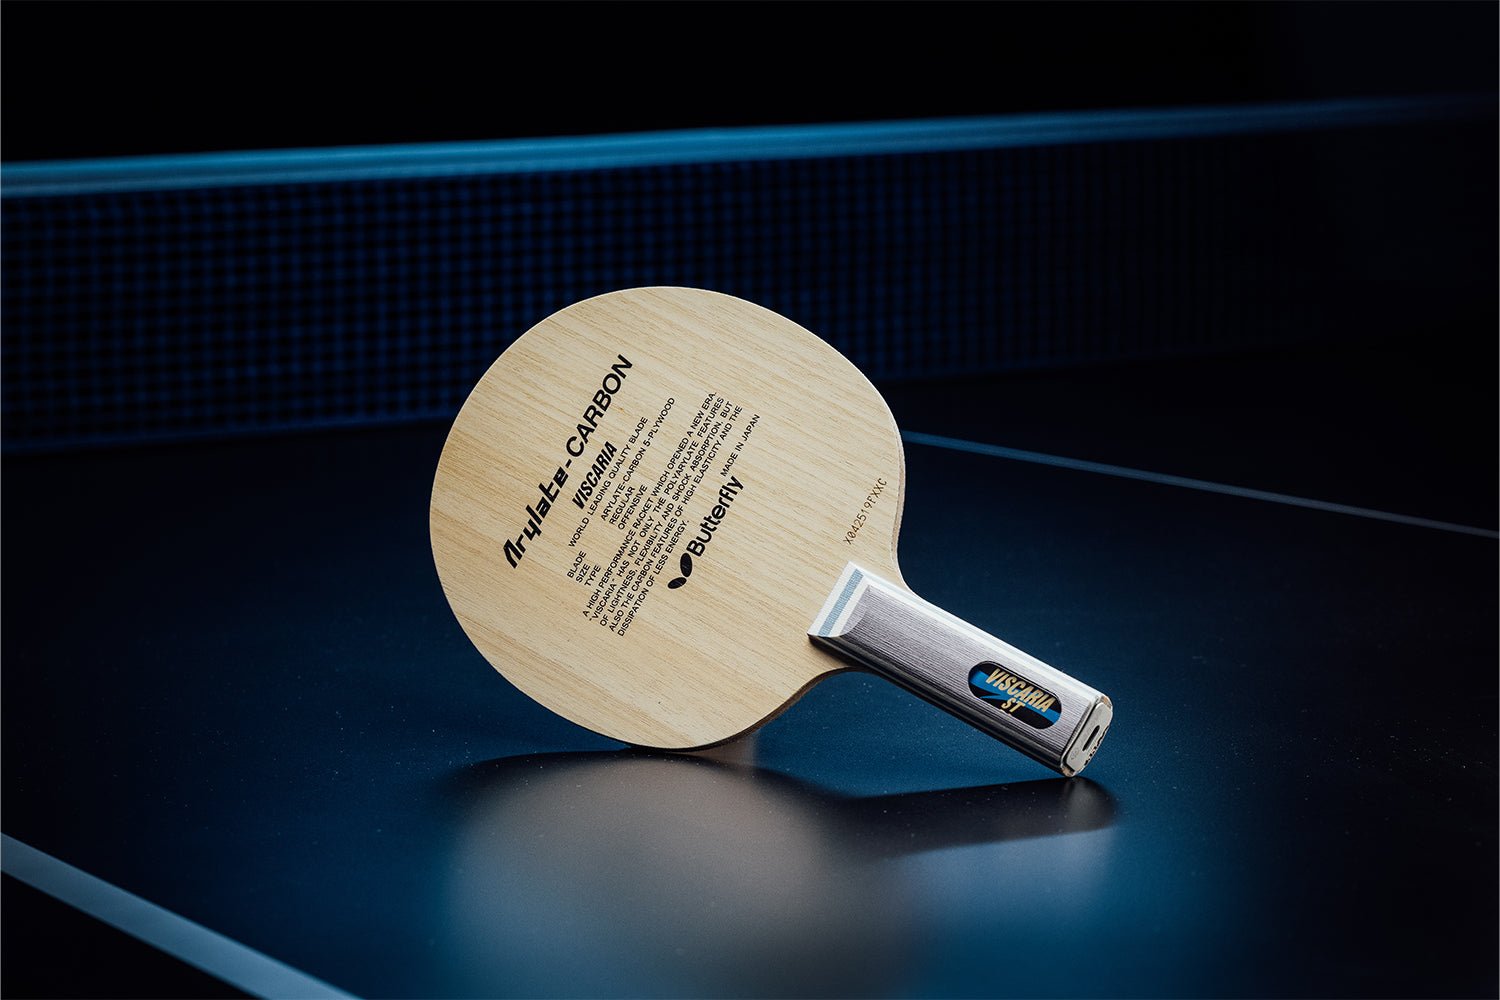 Stehender BUTTERFLY Viscaria Tischtennisschläger mit geradem Griff, Janova Sensor, USB-C-Buchse auf Tischtennistisch